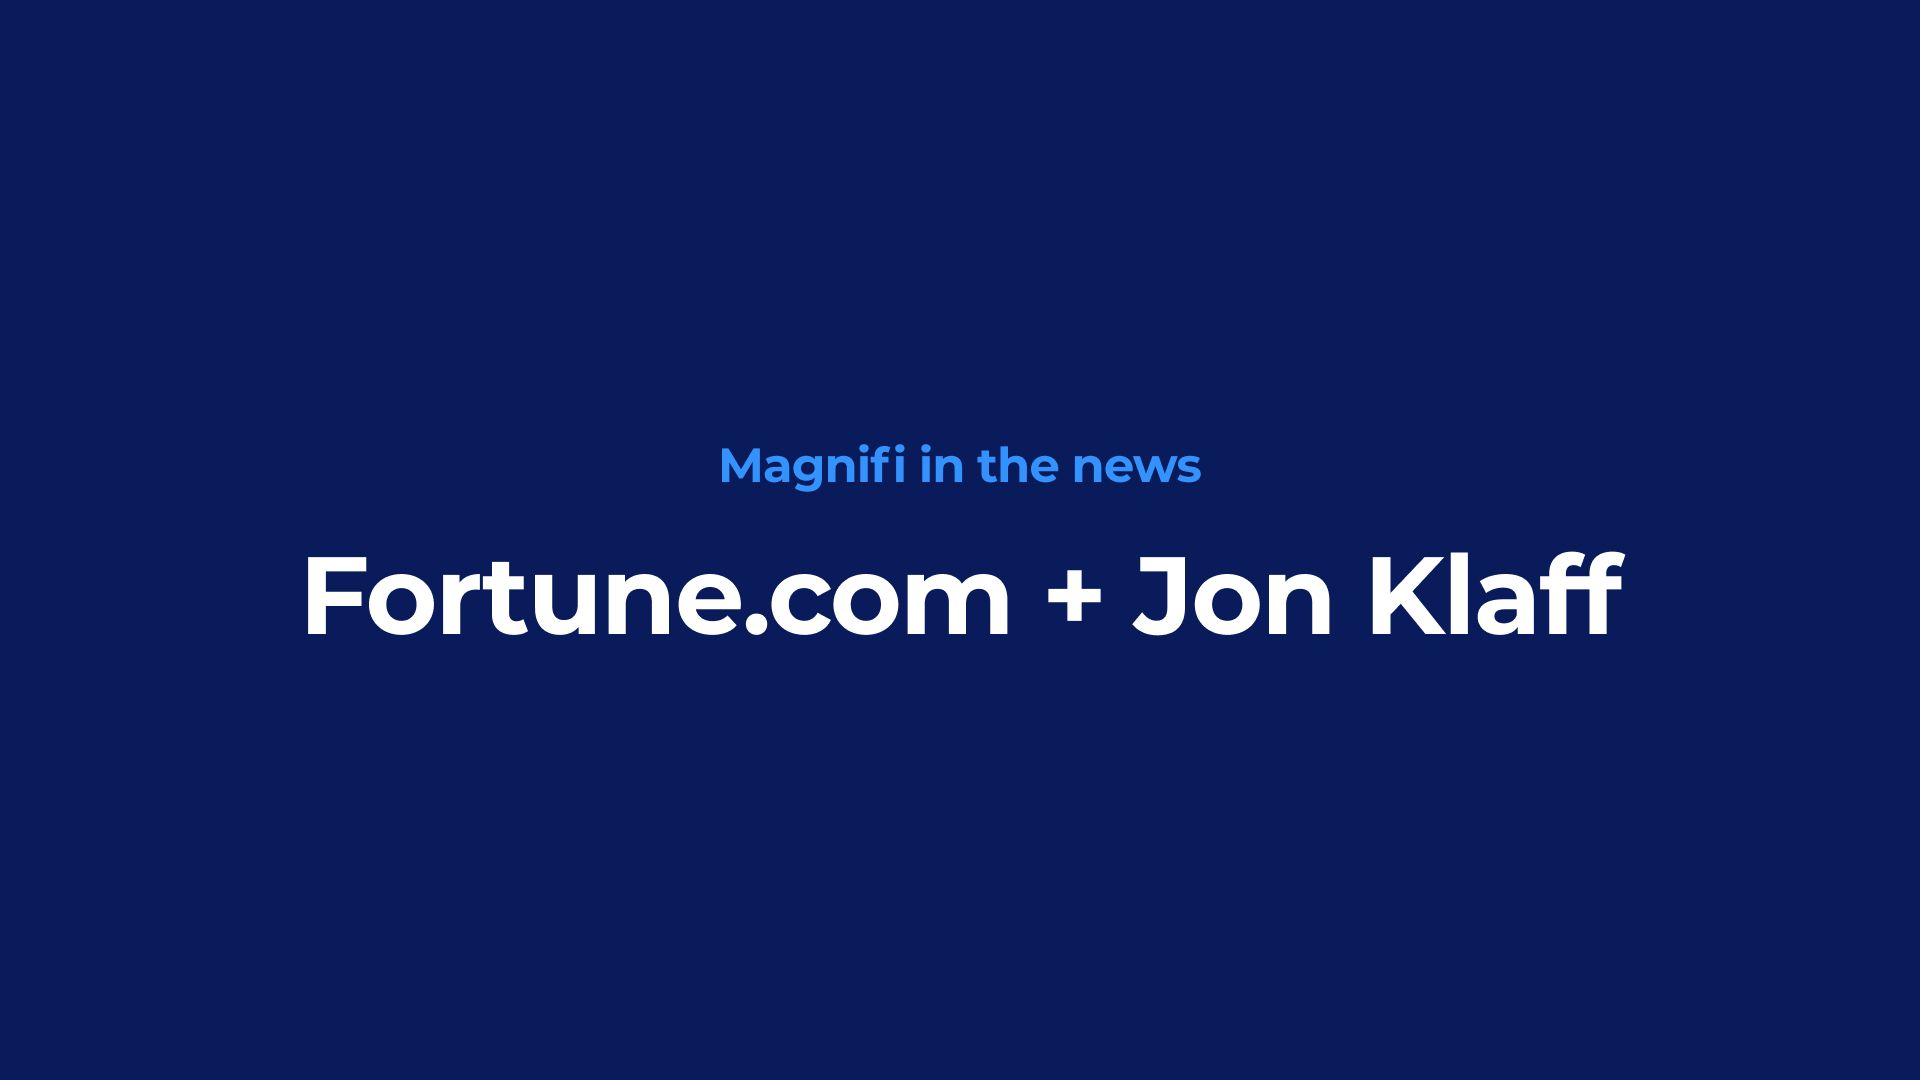 Fortune.com + Jon Klaff